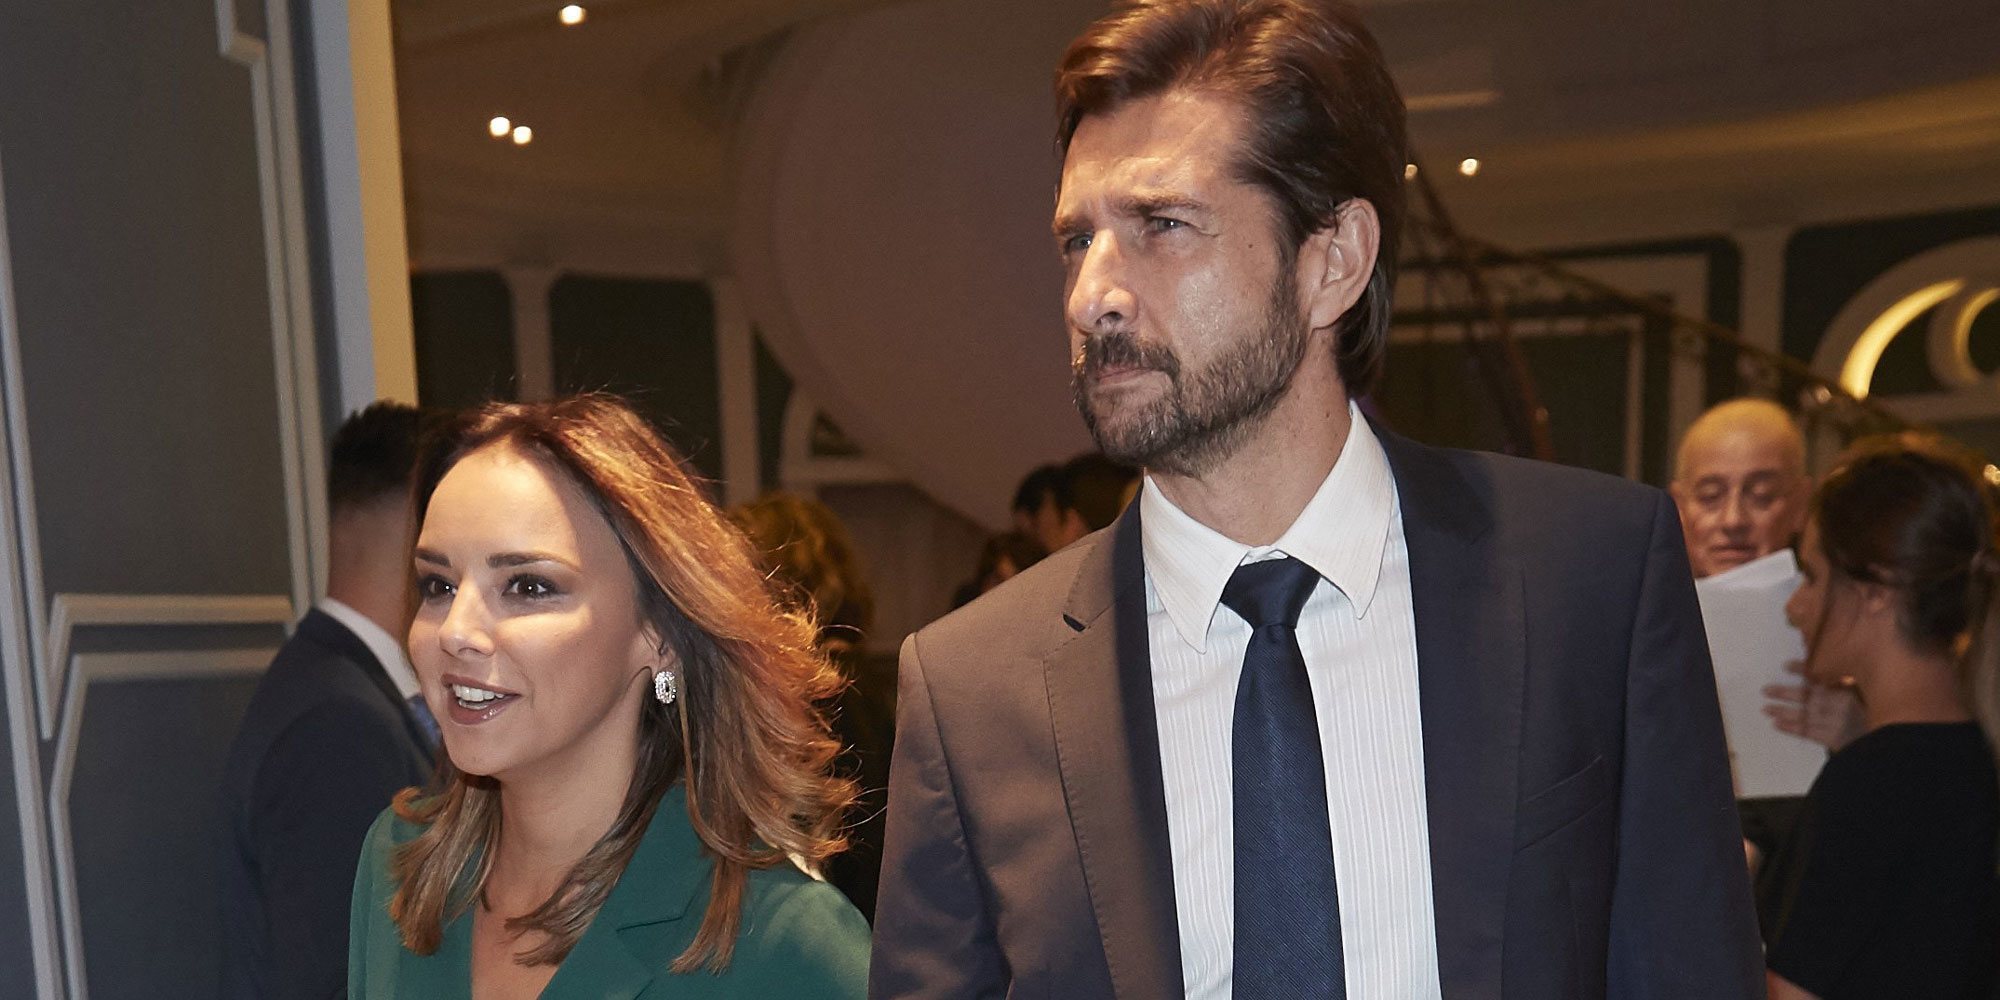 Chenoa posa con Miguel Sánchez Encinas antes de casarse: "Él es el hombre indicado"